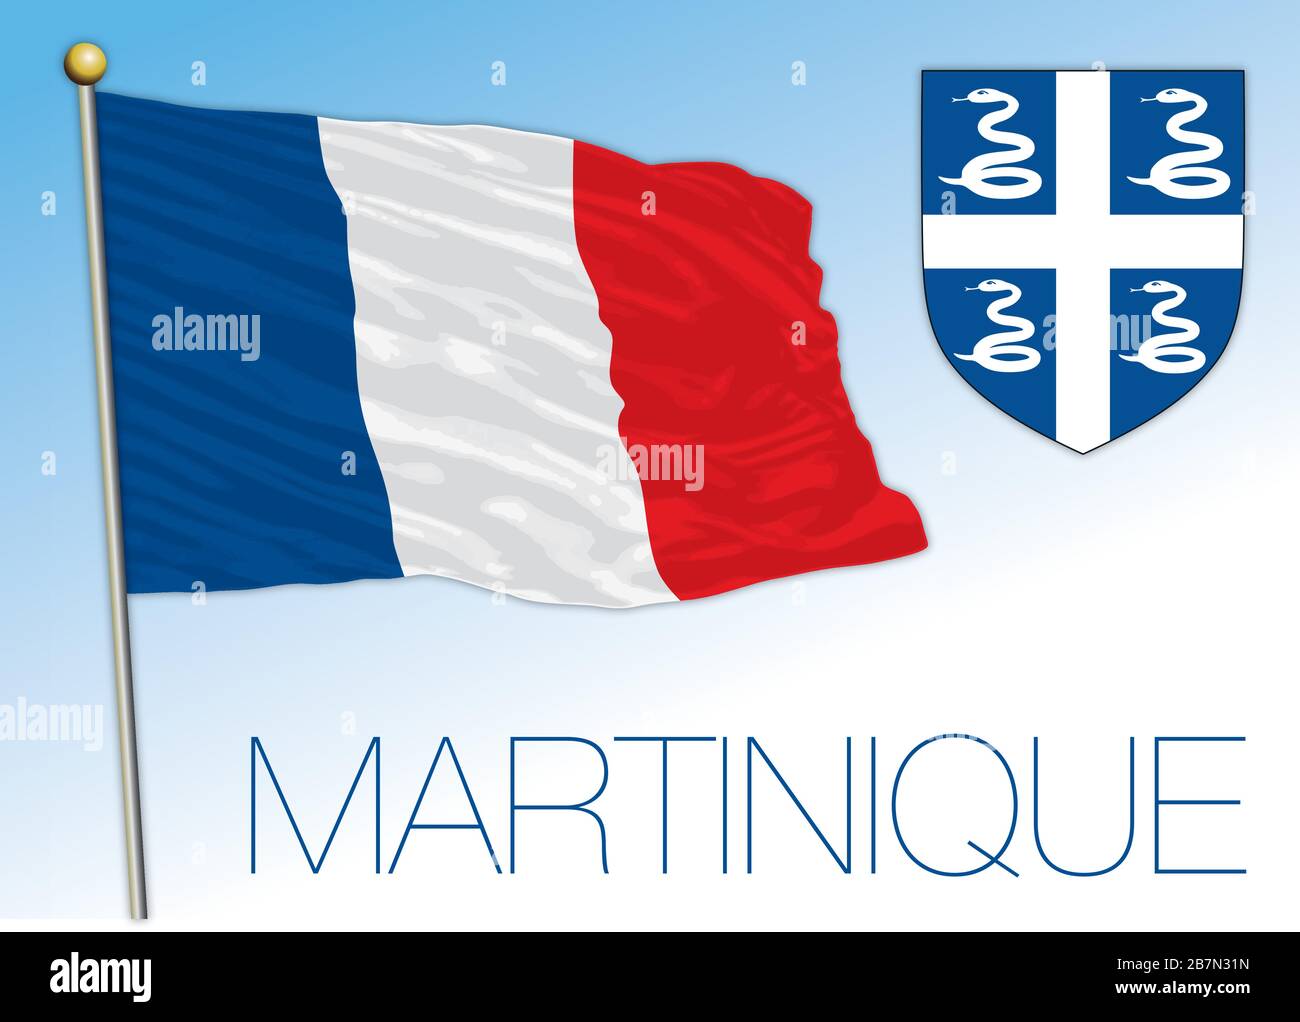 Martinica bandera nacional oficial y escudo de armas, territorio francés, ilustración vectorial Ilustración del Vector